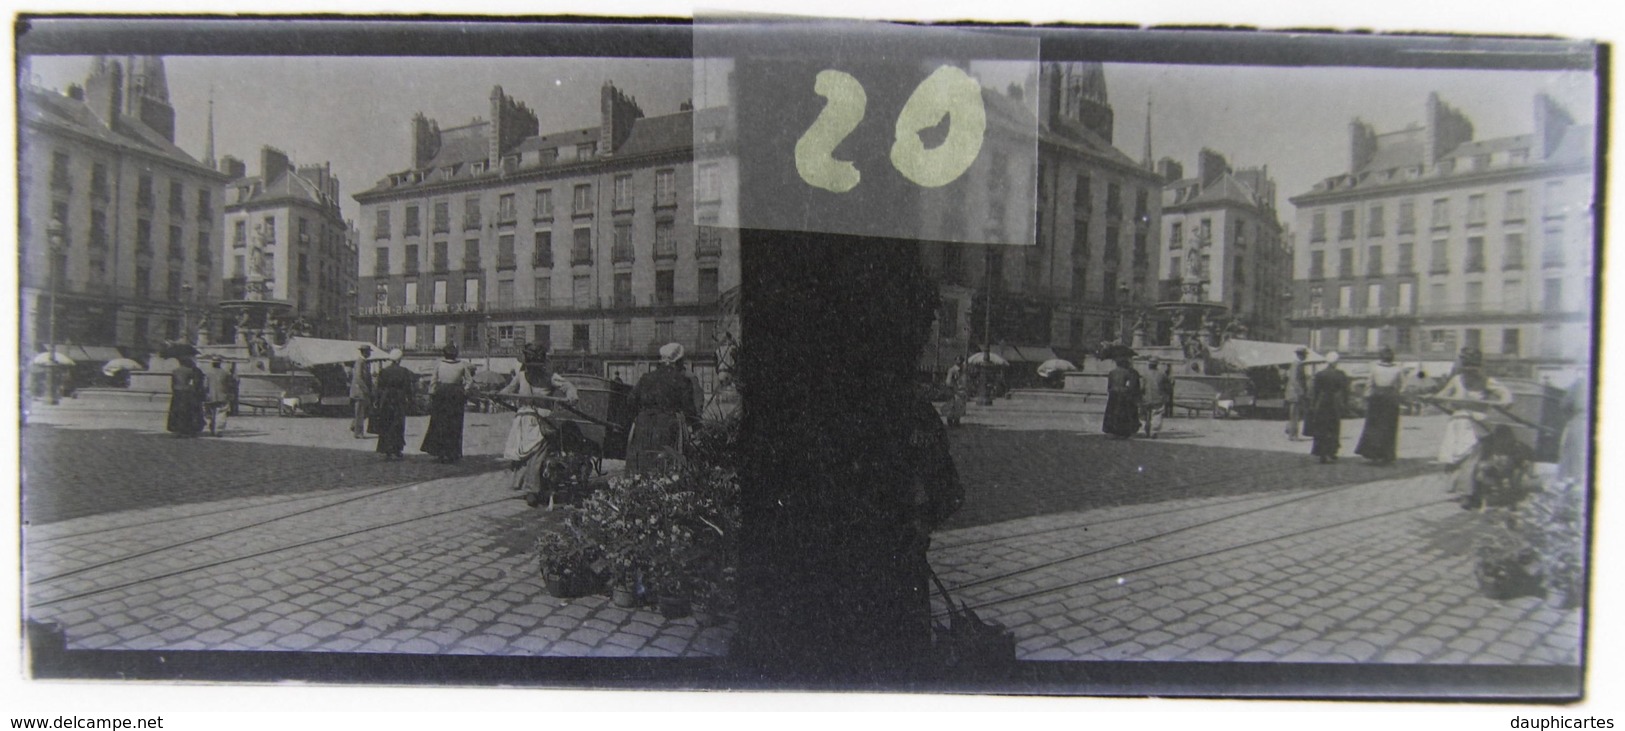 NANTES Vers 1900 : Place Royale. Plaque De Verre Stéréoscopique, Positif. - Plaques De Verre